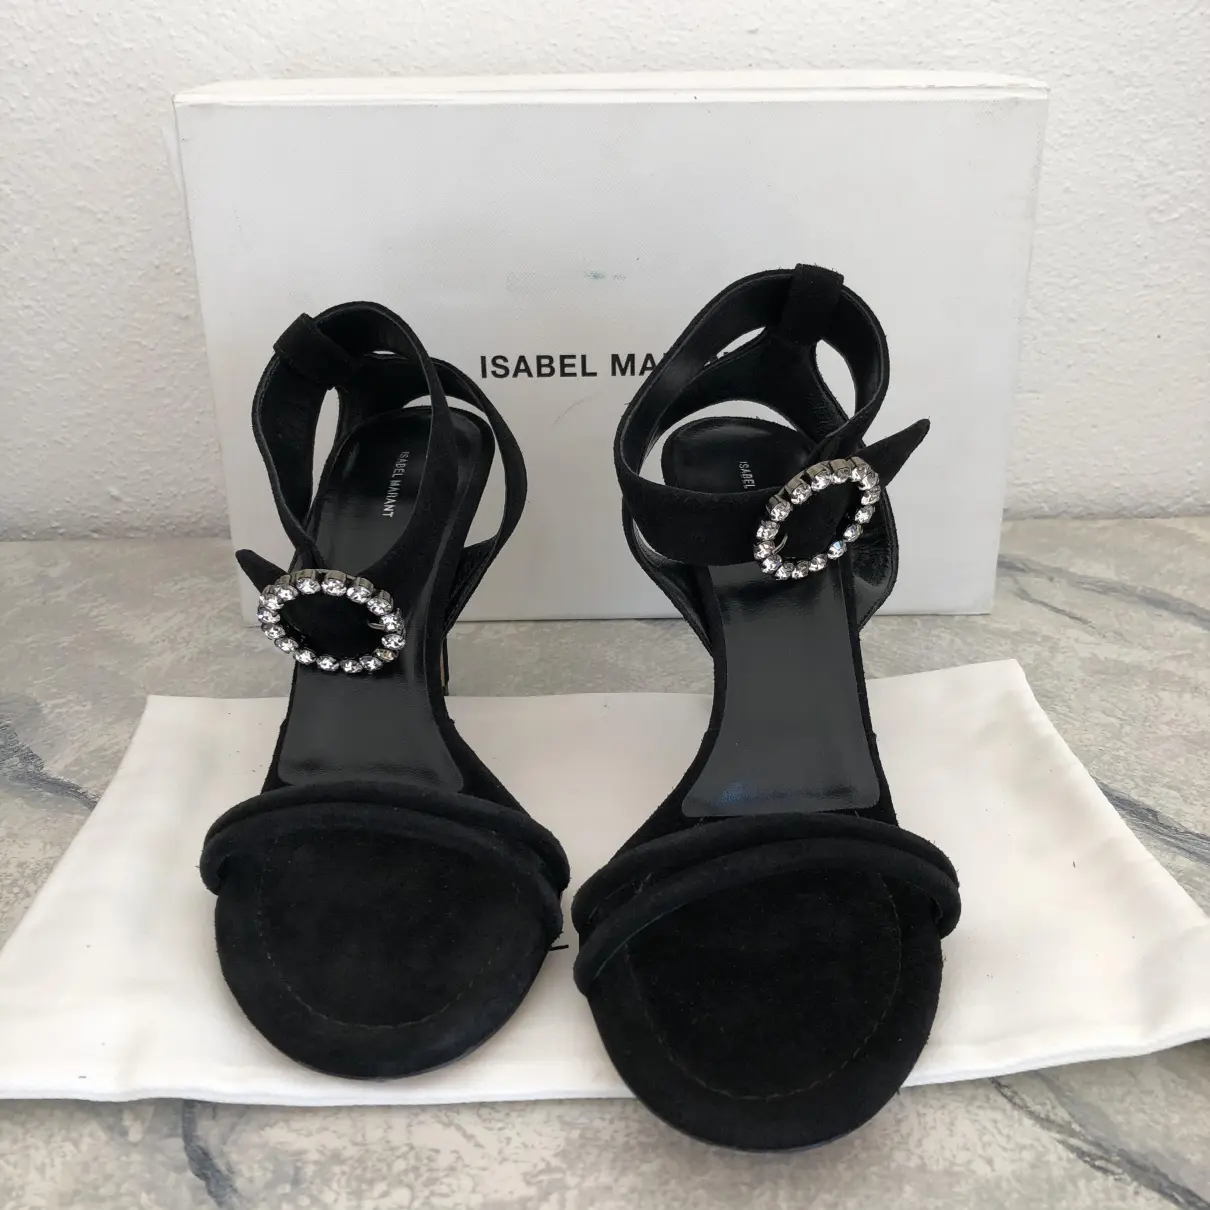 Buy Isabel Marant Sandals online